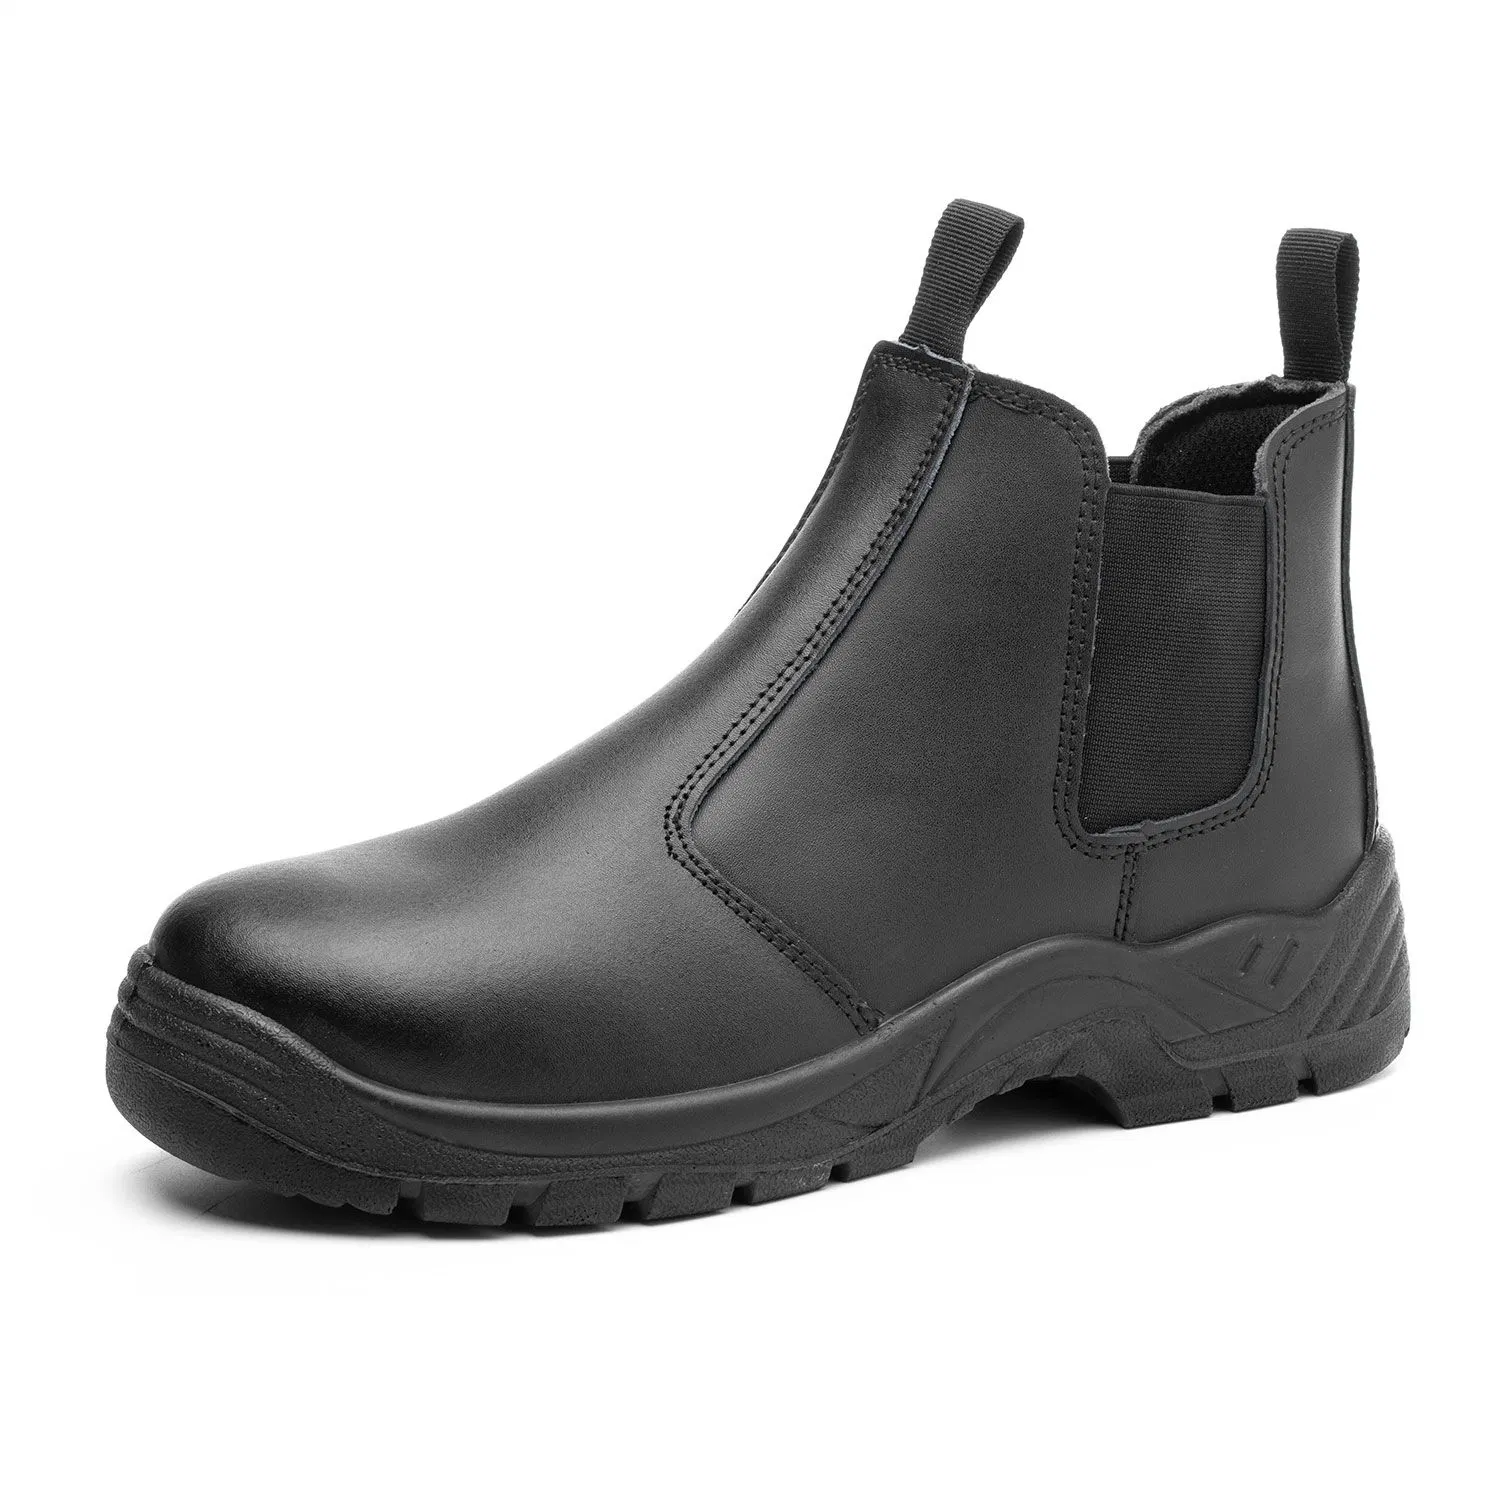 Chelsea trabalho de couro botas de segurança calçados para homens de aço com tampa de fecho